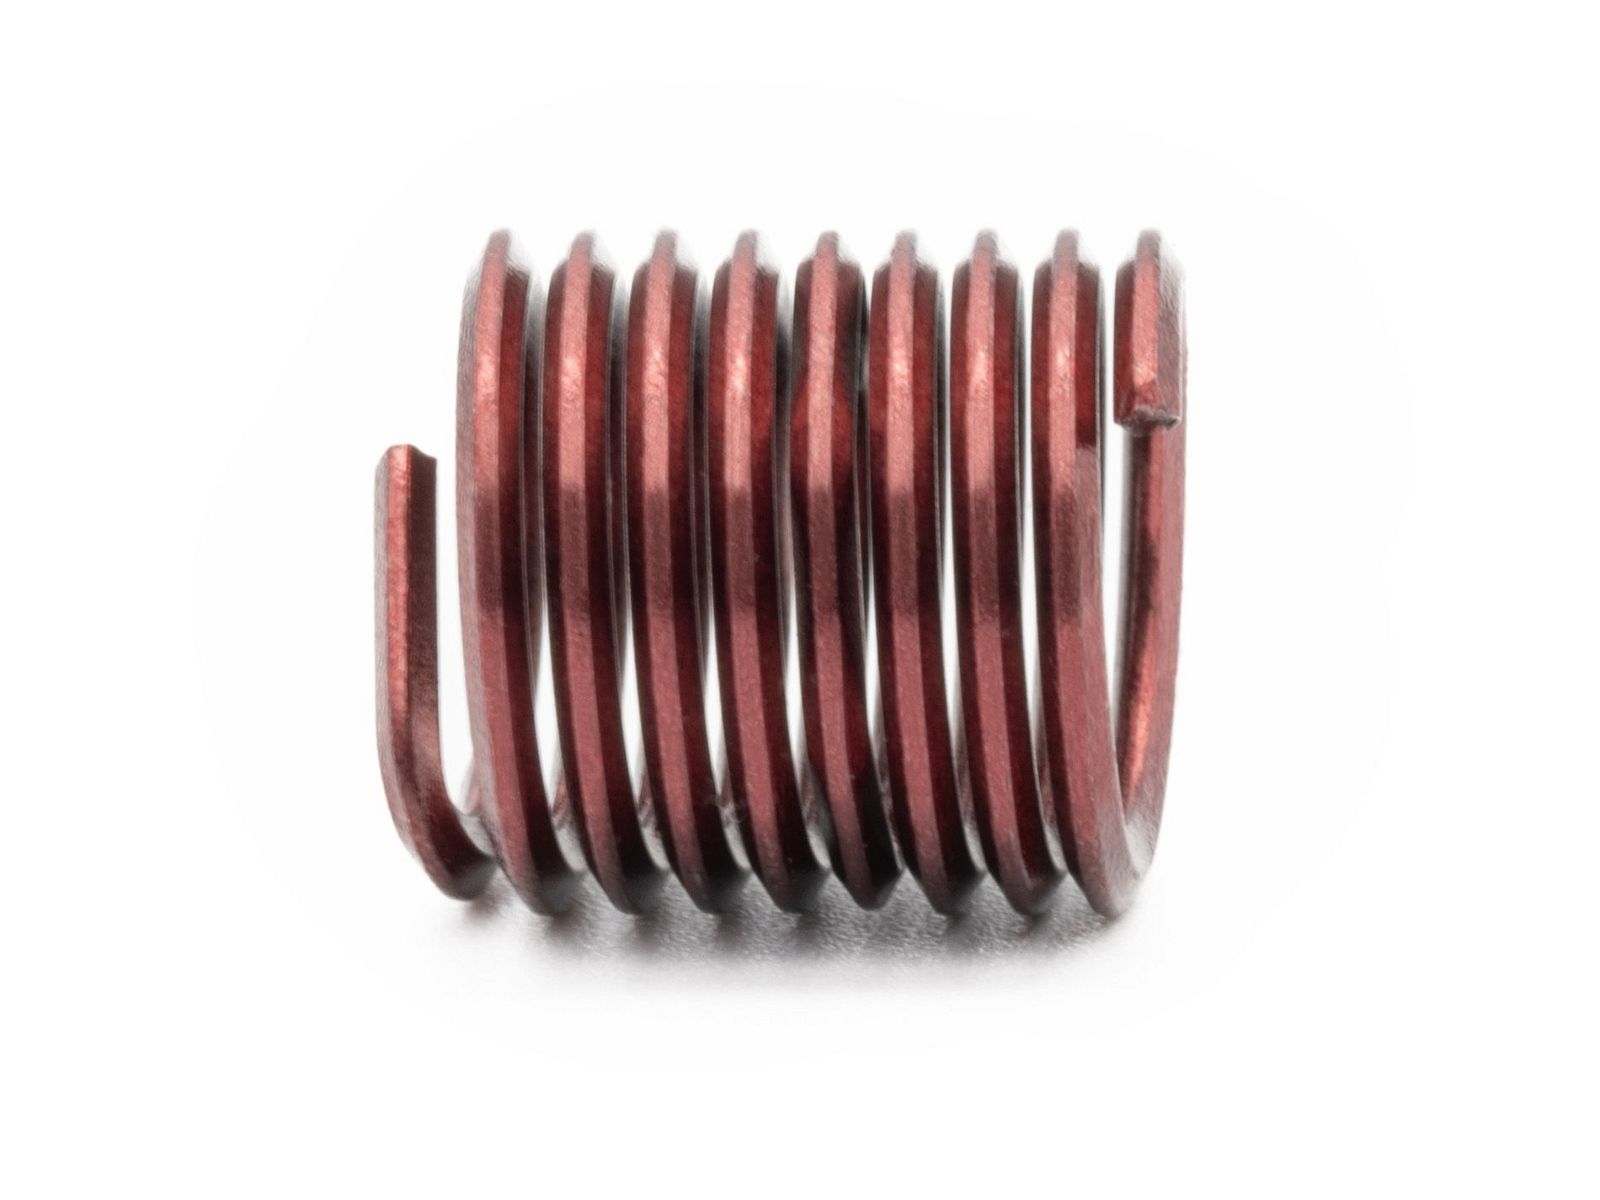 BaerCoil Wire Thread Inserts M 8 x 1.25 - 1.5 D (12 mm) - screw grip (screw locking) - 10 pcs.